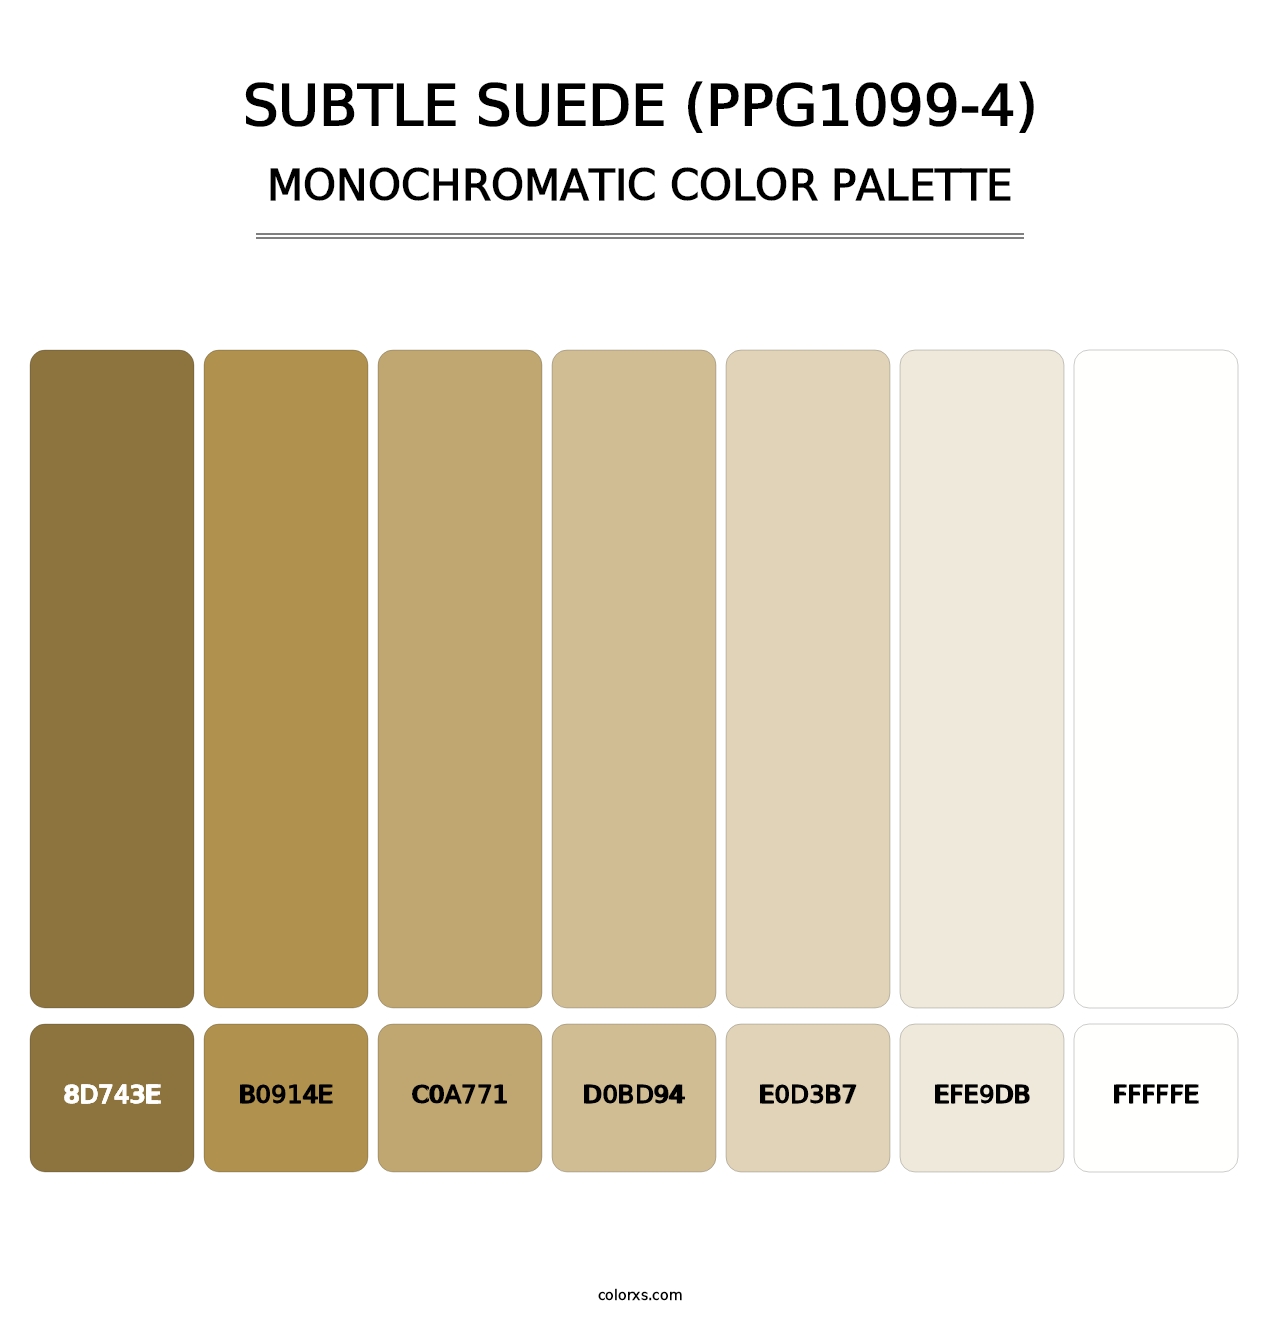 Subtle Suede (PPG1099-4) - Monochromatic Color Palette